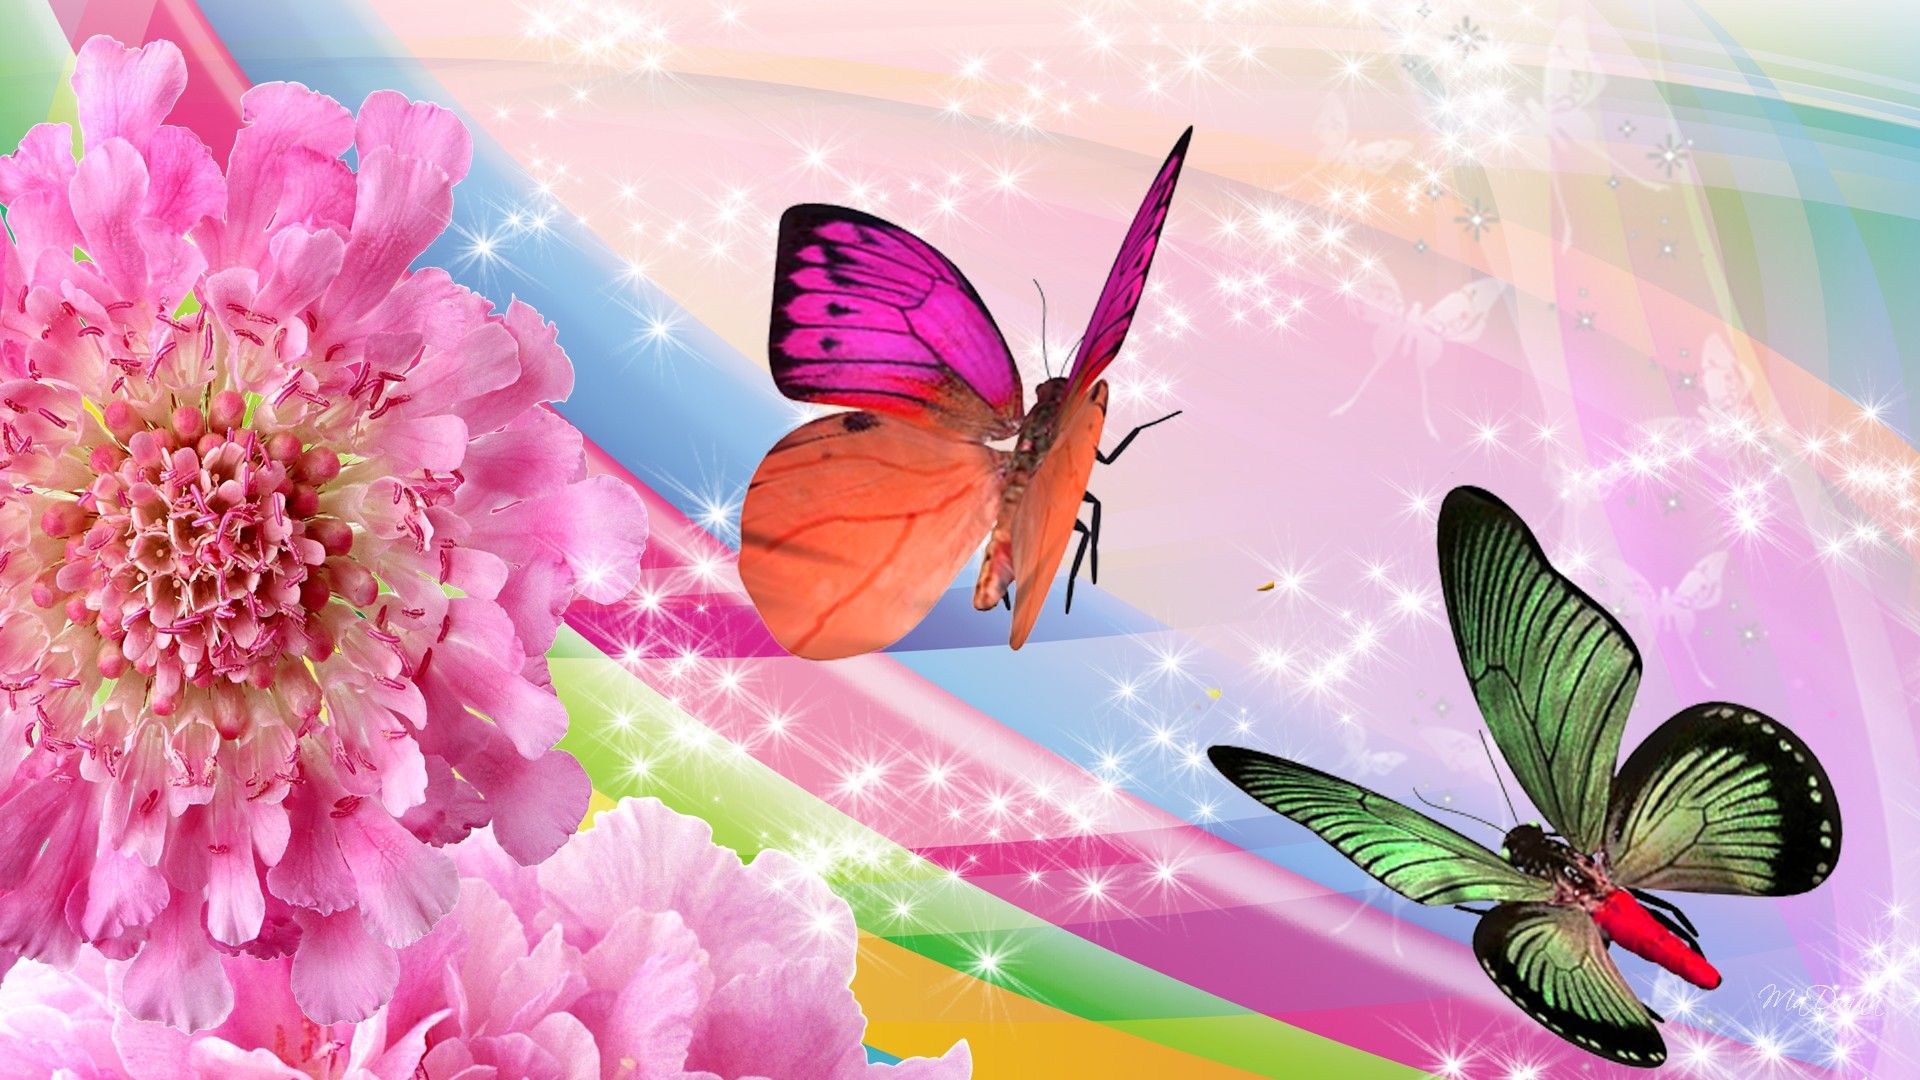 マリポサスの壁紙,バタフライ,昆虫,蛾と蝶,ピンク,無脊椎動物